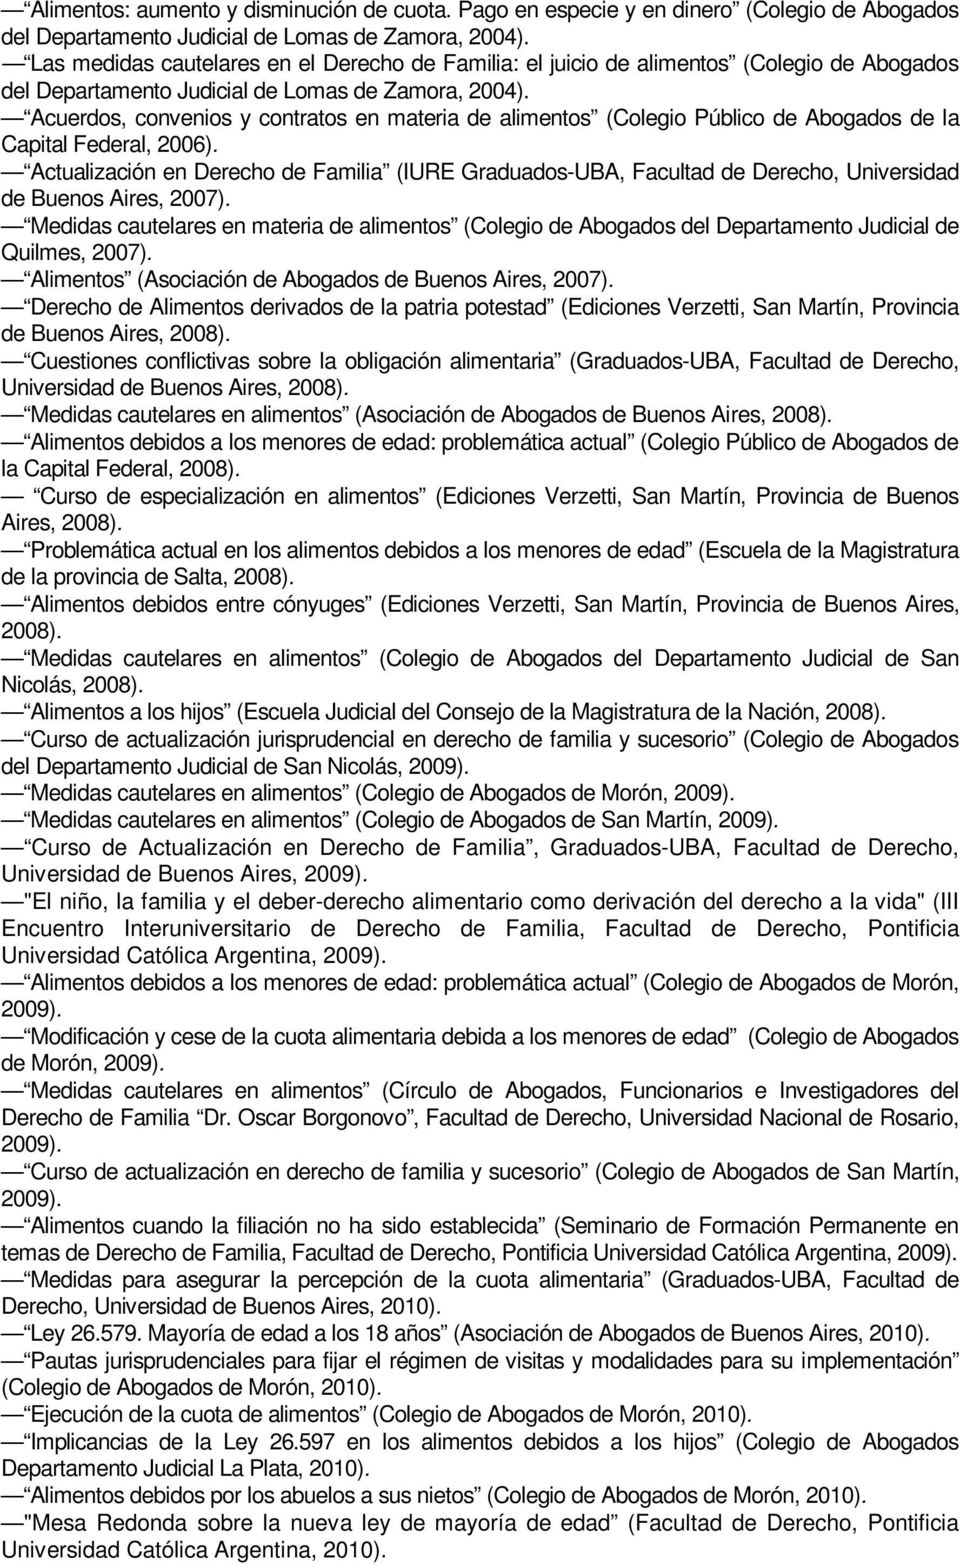 Acuerdos, convenios y contratos en materia de alimentos (Colegio Público de Abogados de la Capital Federal, 2006).